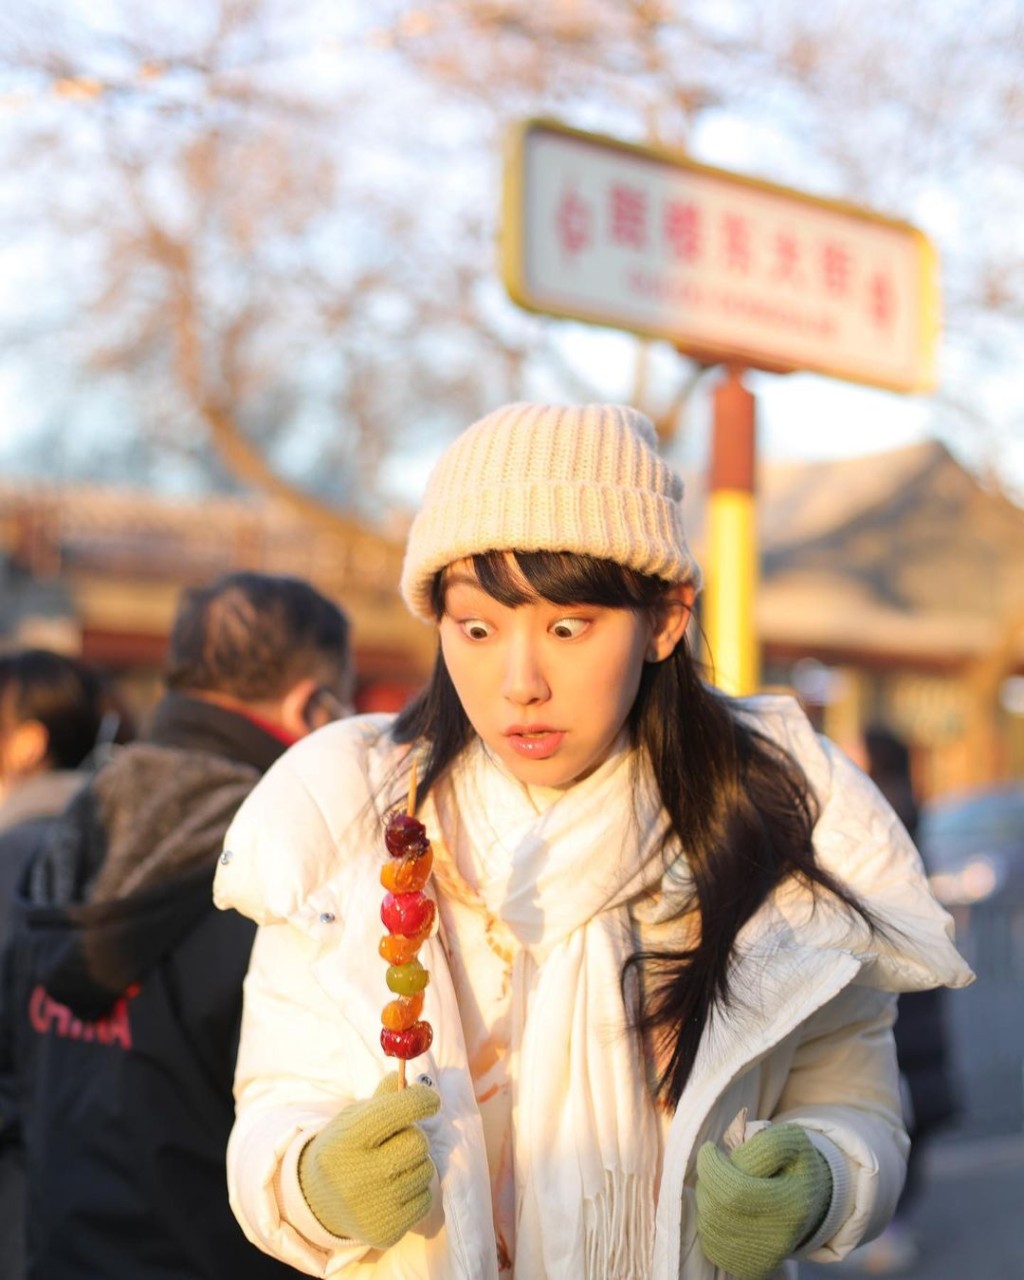 炎明熹在北京吃冰糖葫蘆表情多多。